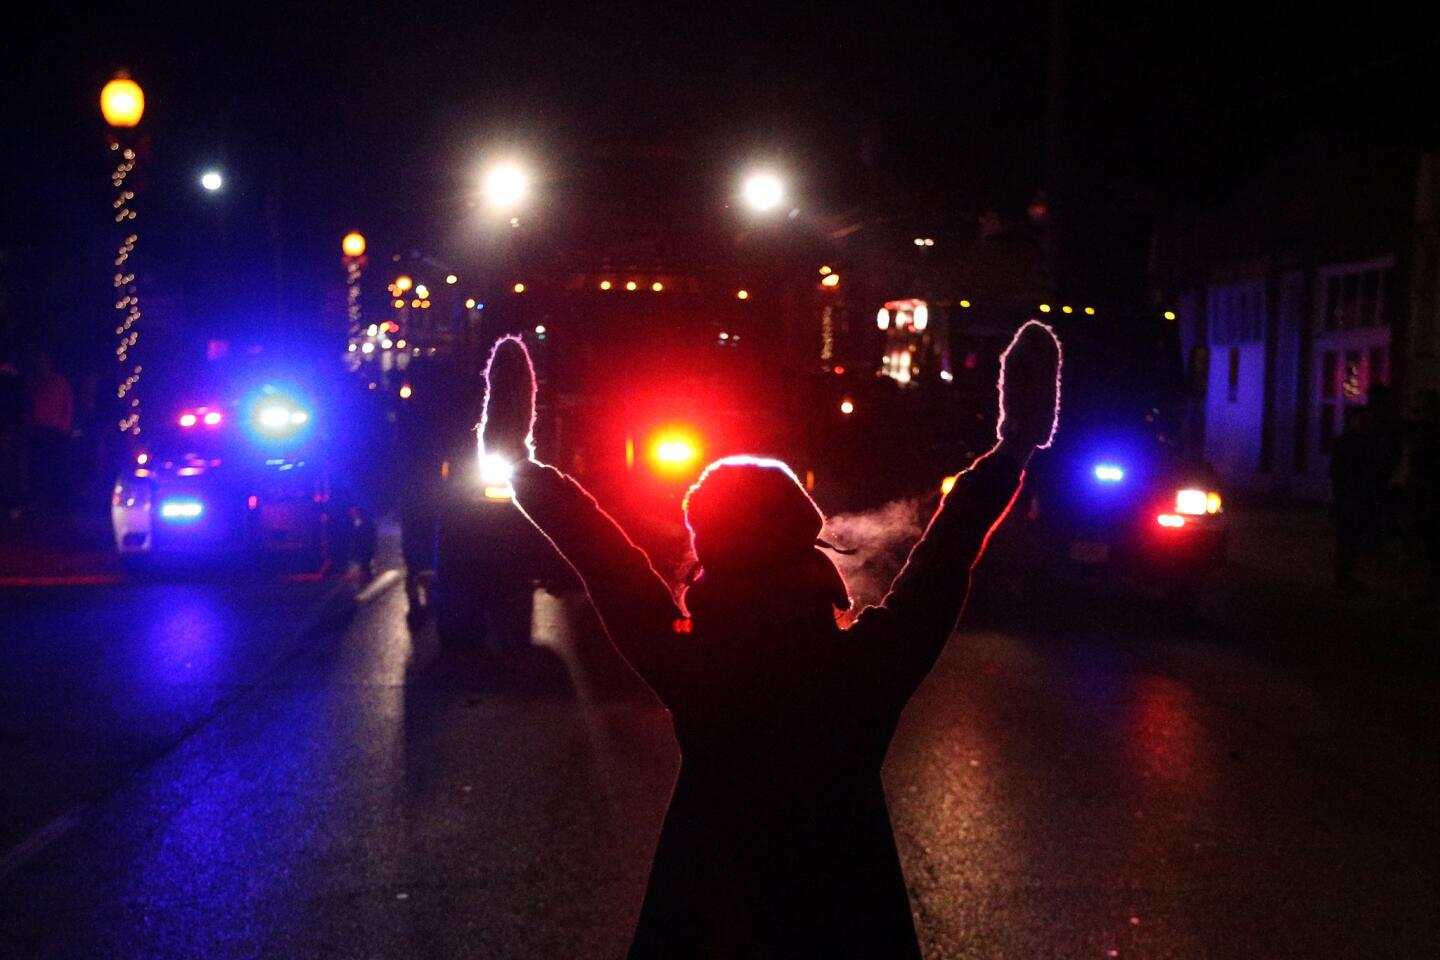 Unrest in Ferguson